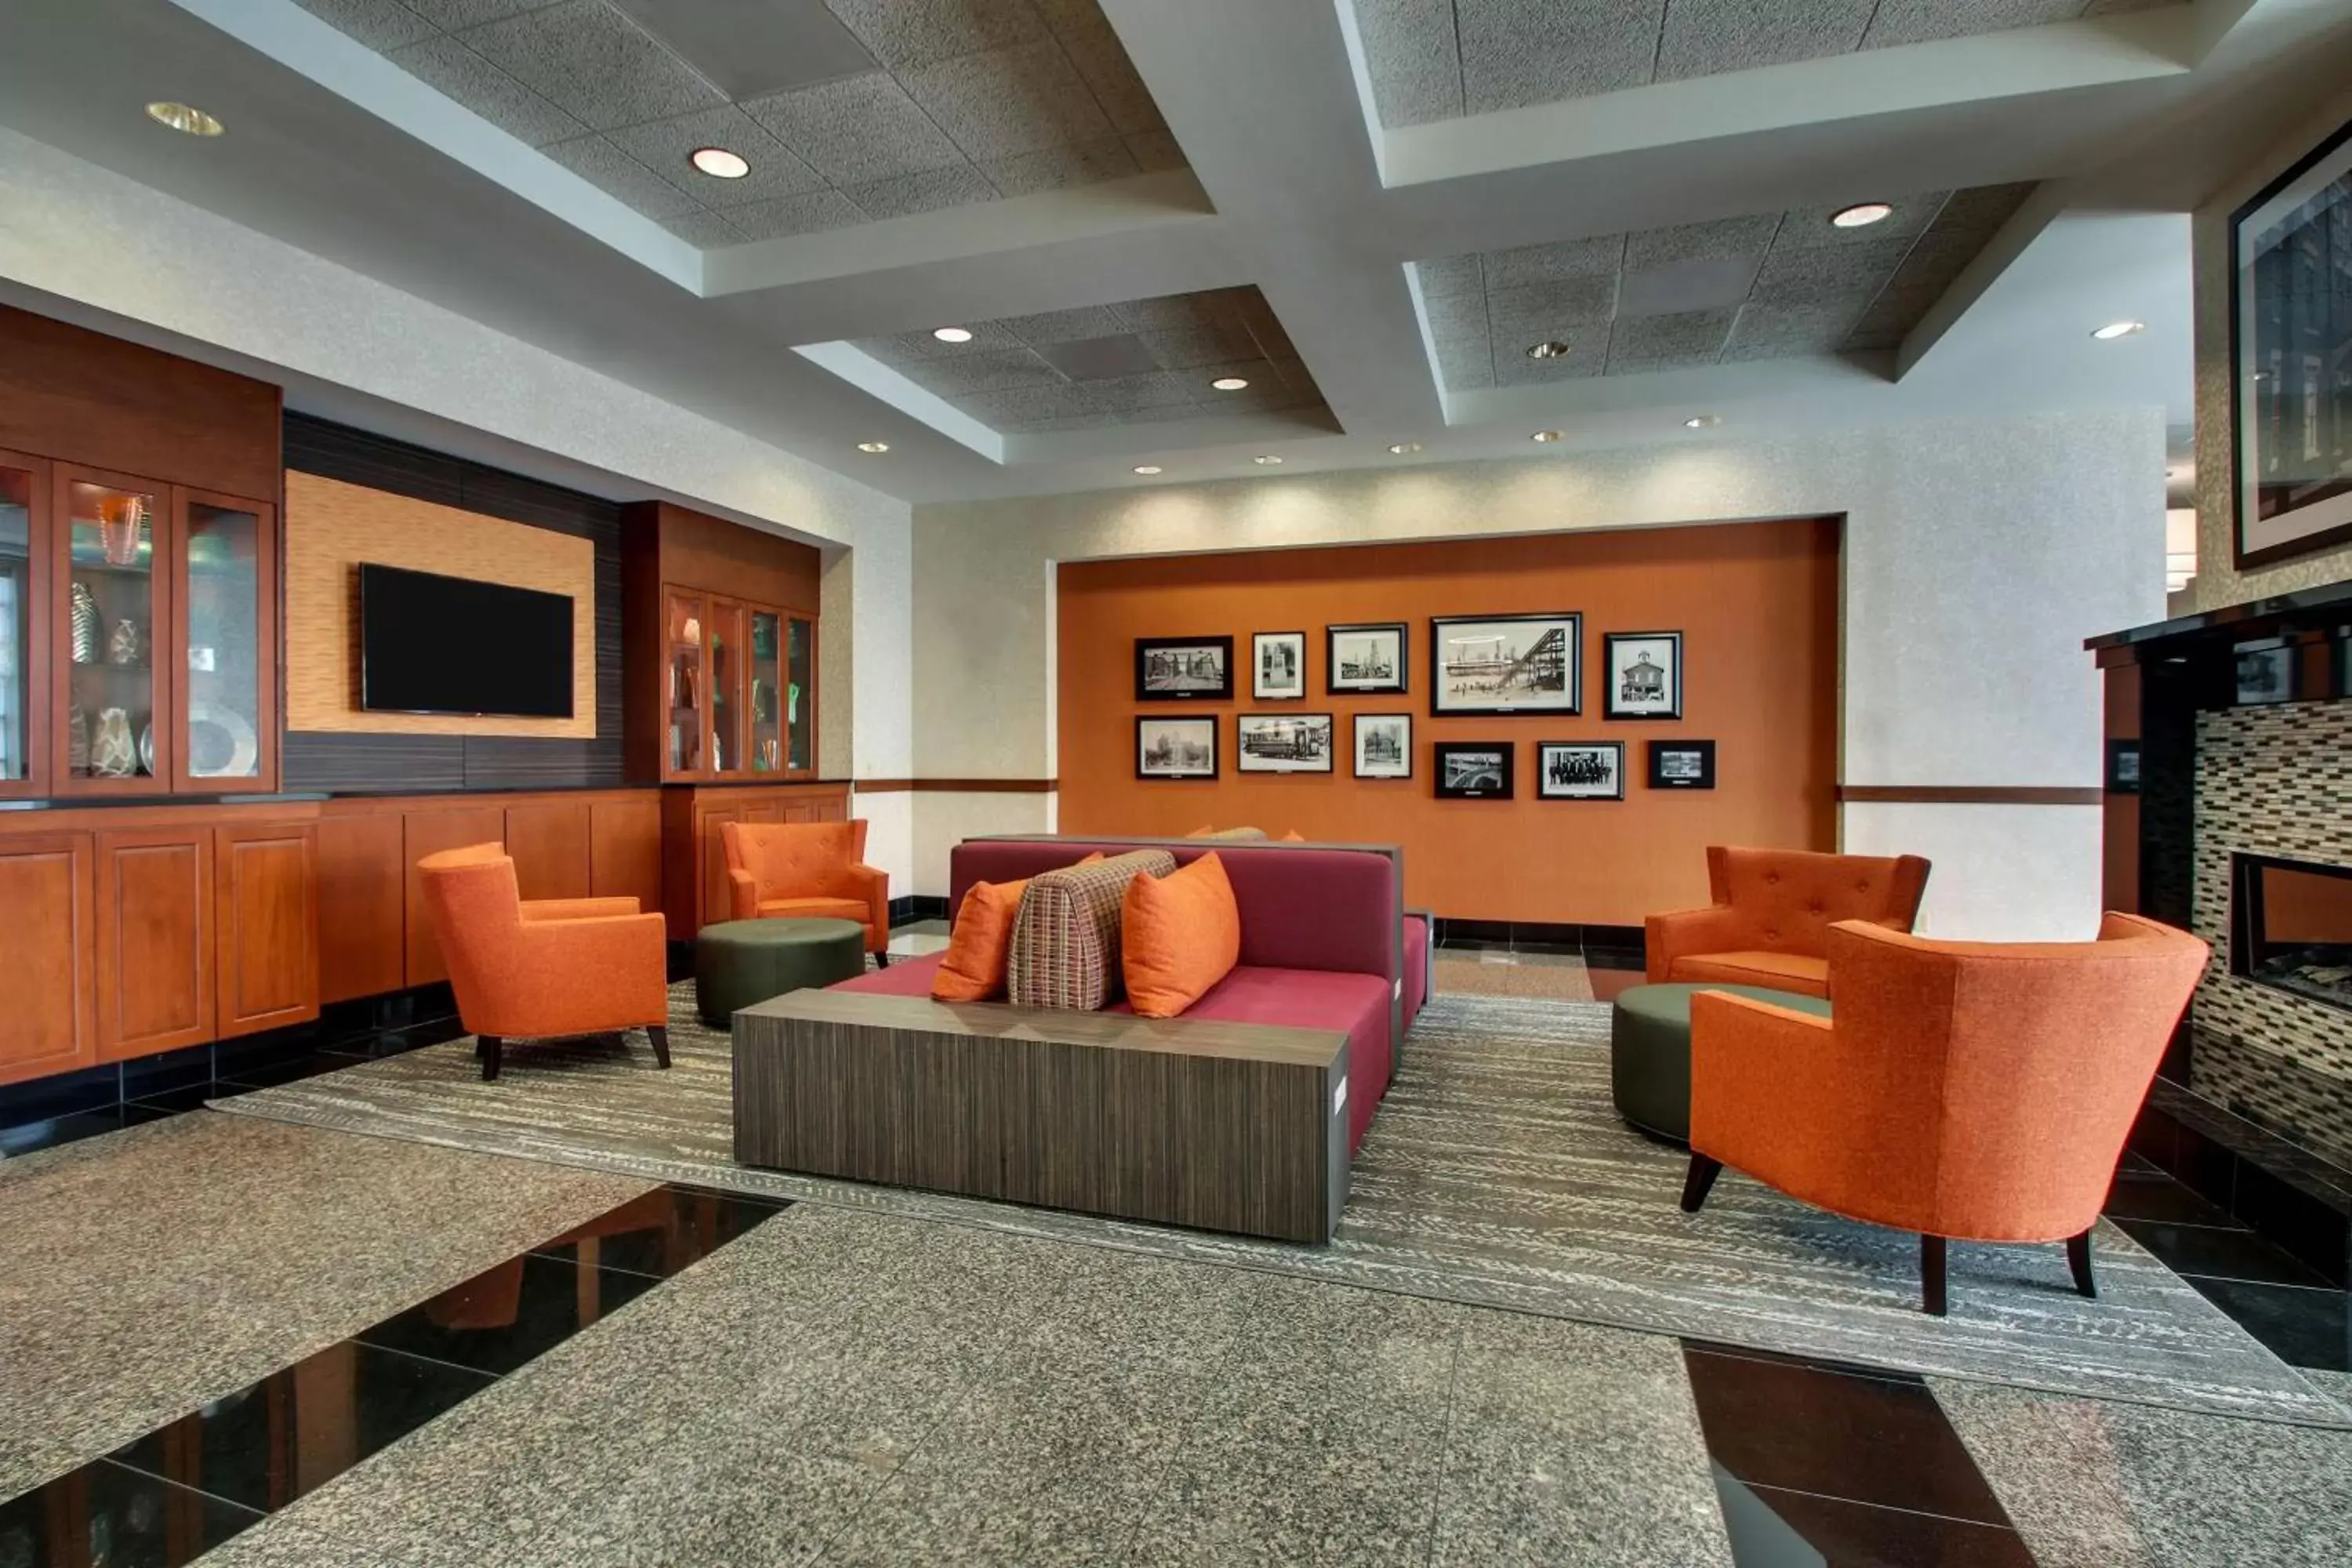 Lobby or reception, Lobby/Reception in Drury Inn & Suites Findlay